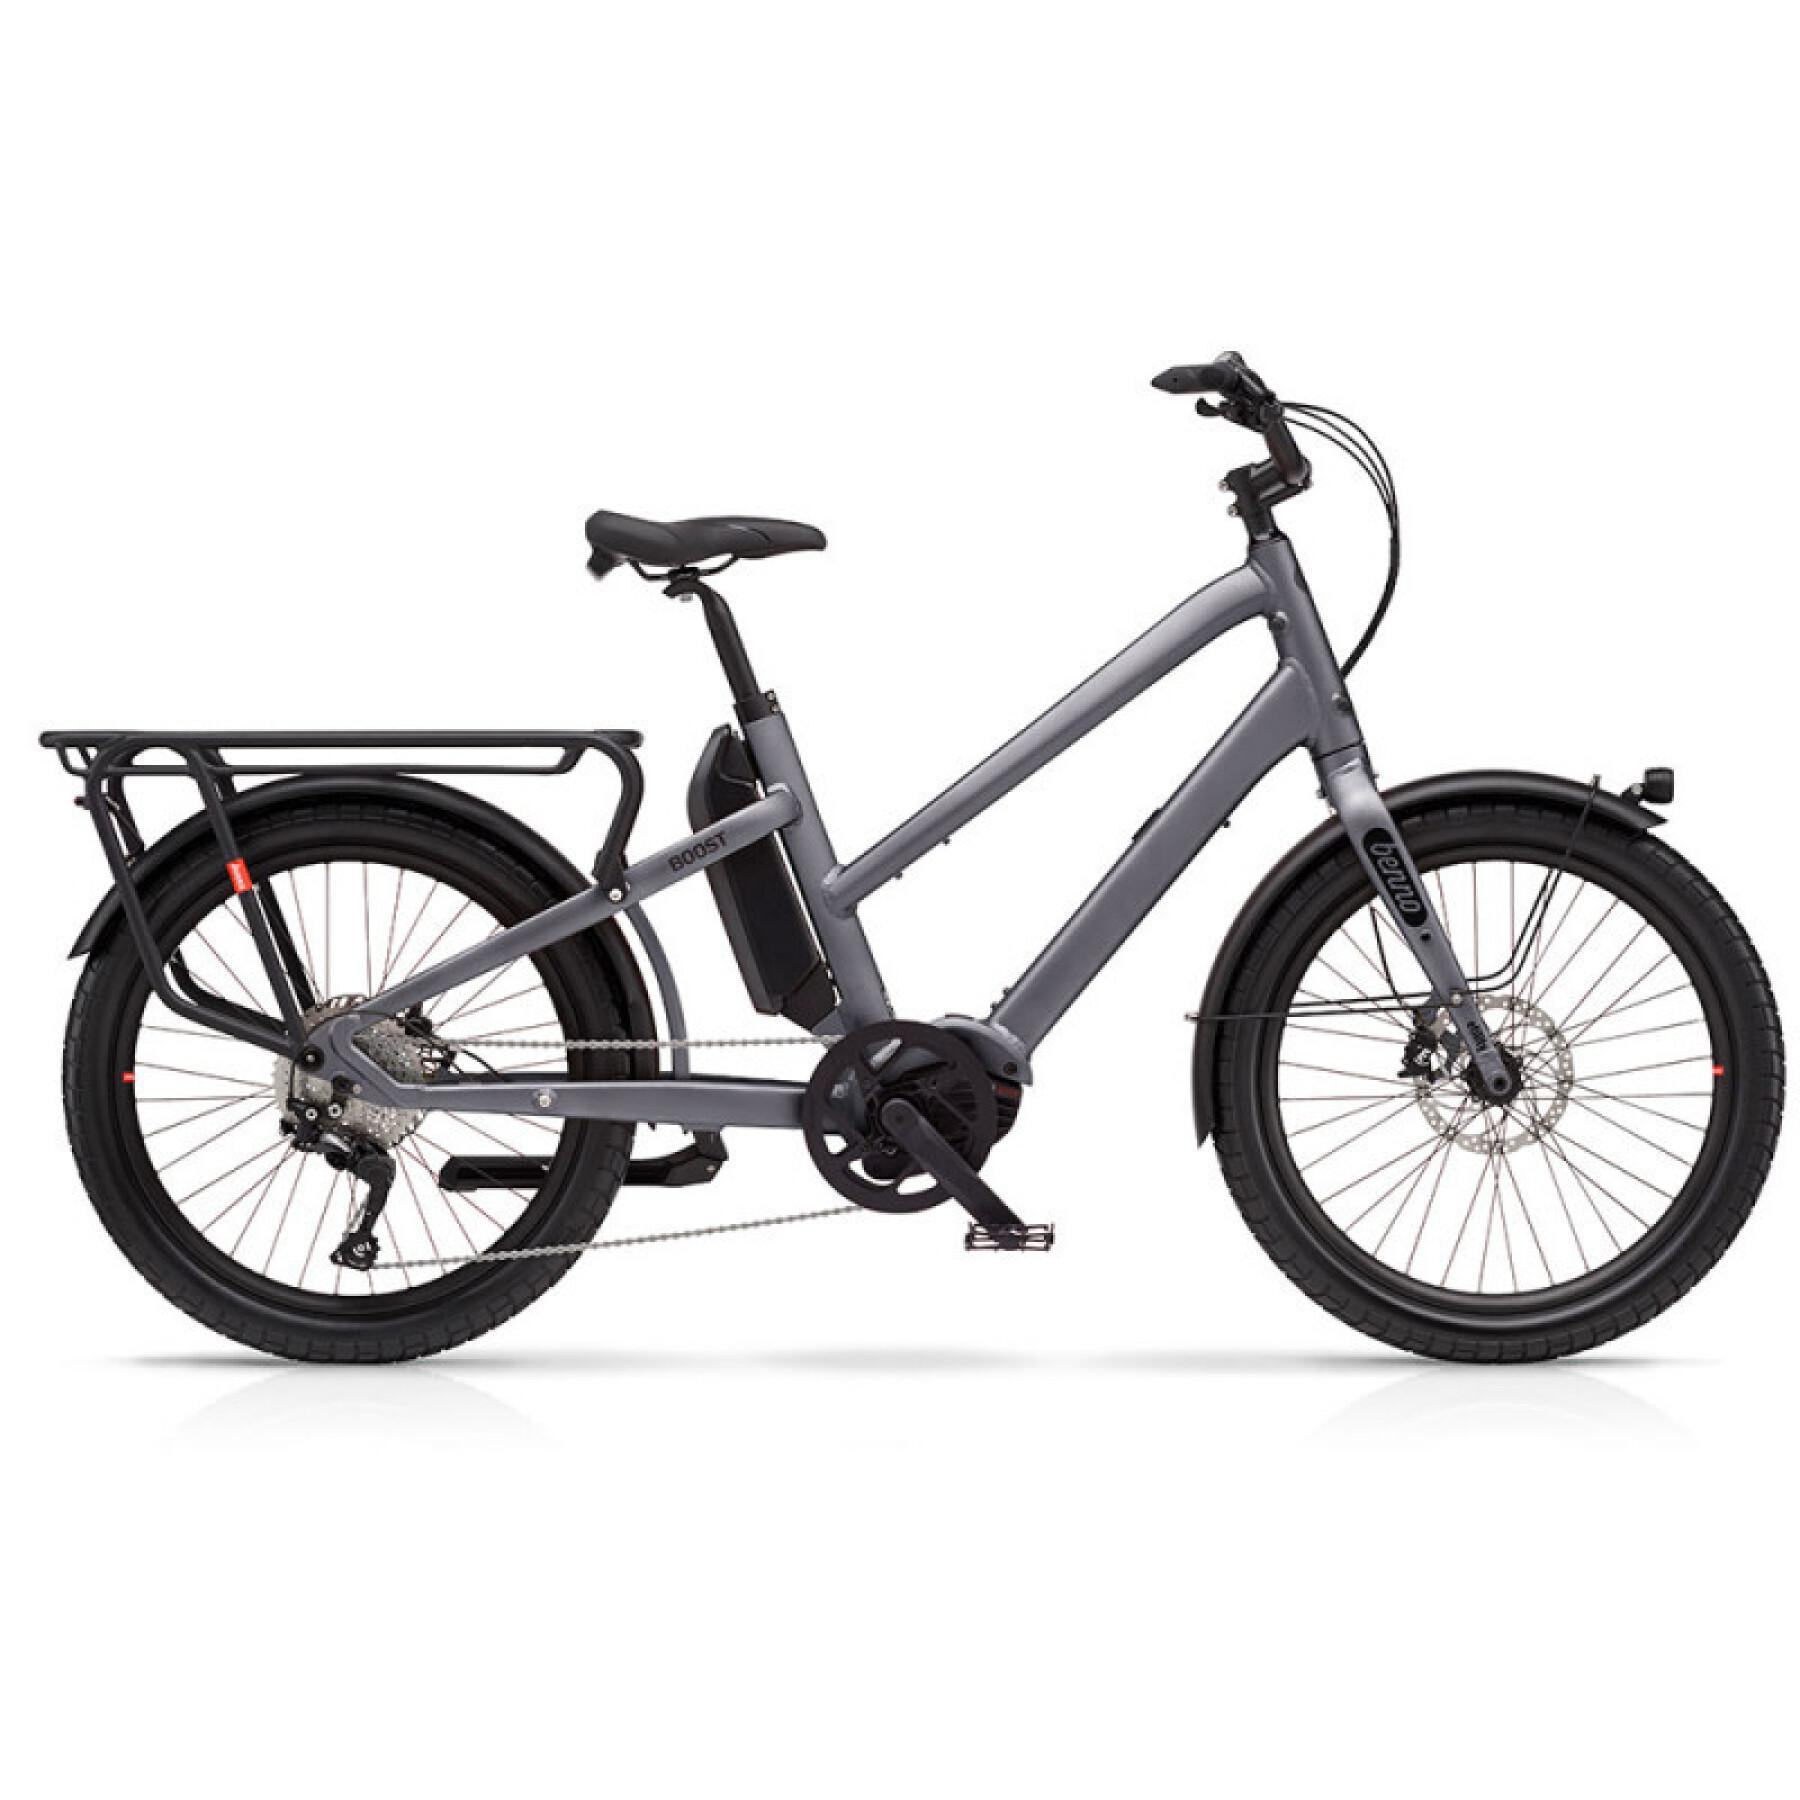 Electric bike benno Boost E Evo 4 - Bosch Perf CX 500Wh - Step Through